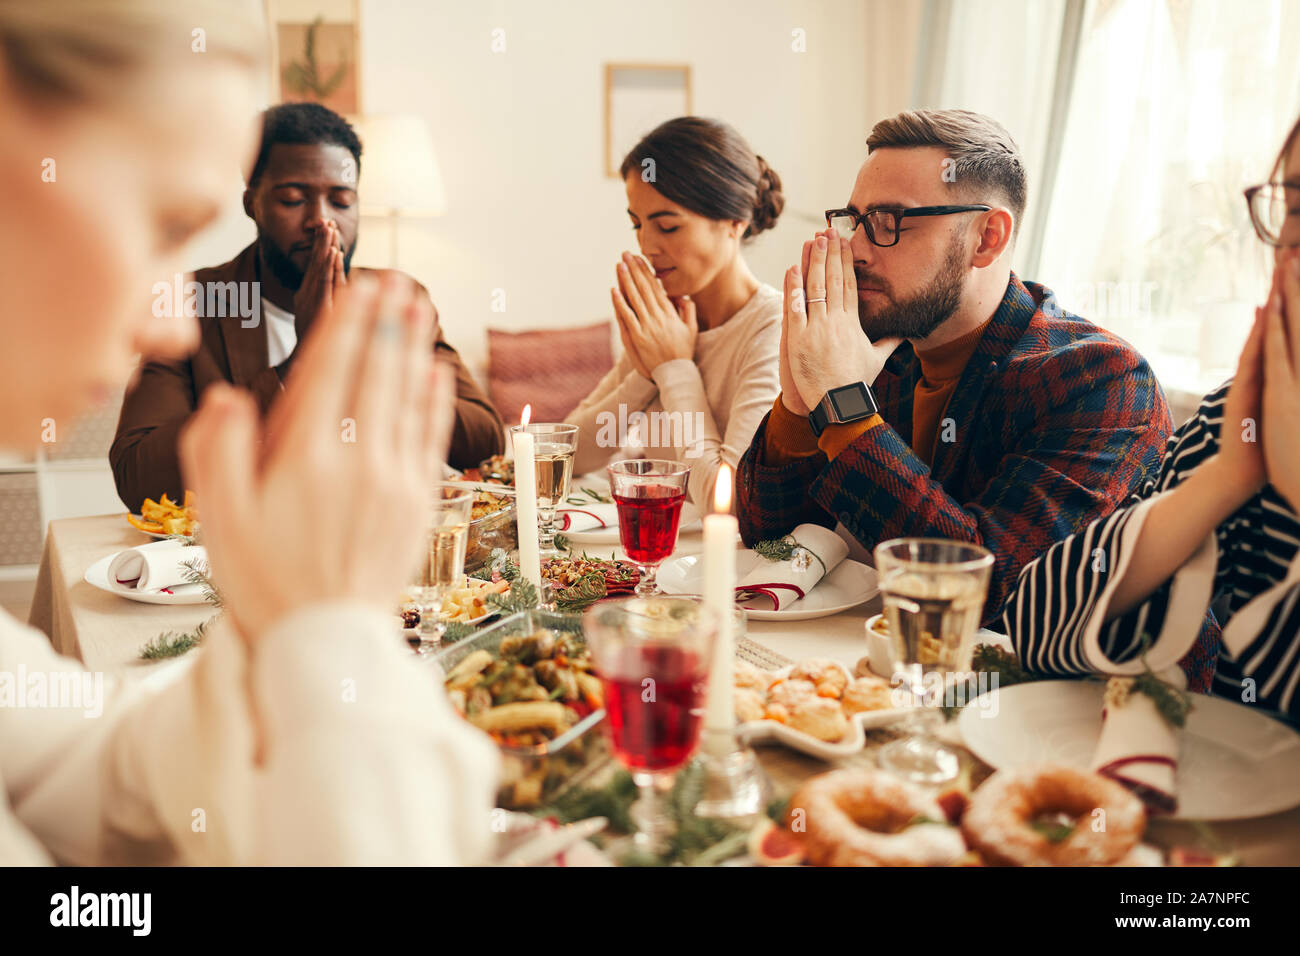 Grupo multiétnico de elegantes personas adultas orando sentado en la mesa durante el banquete de Navidad Foto de stock